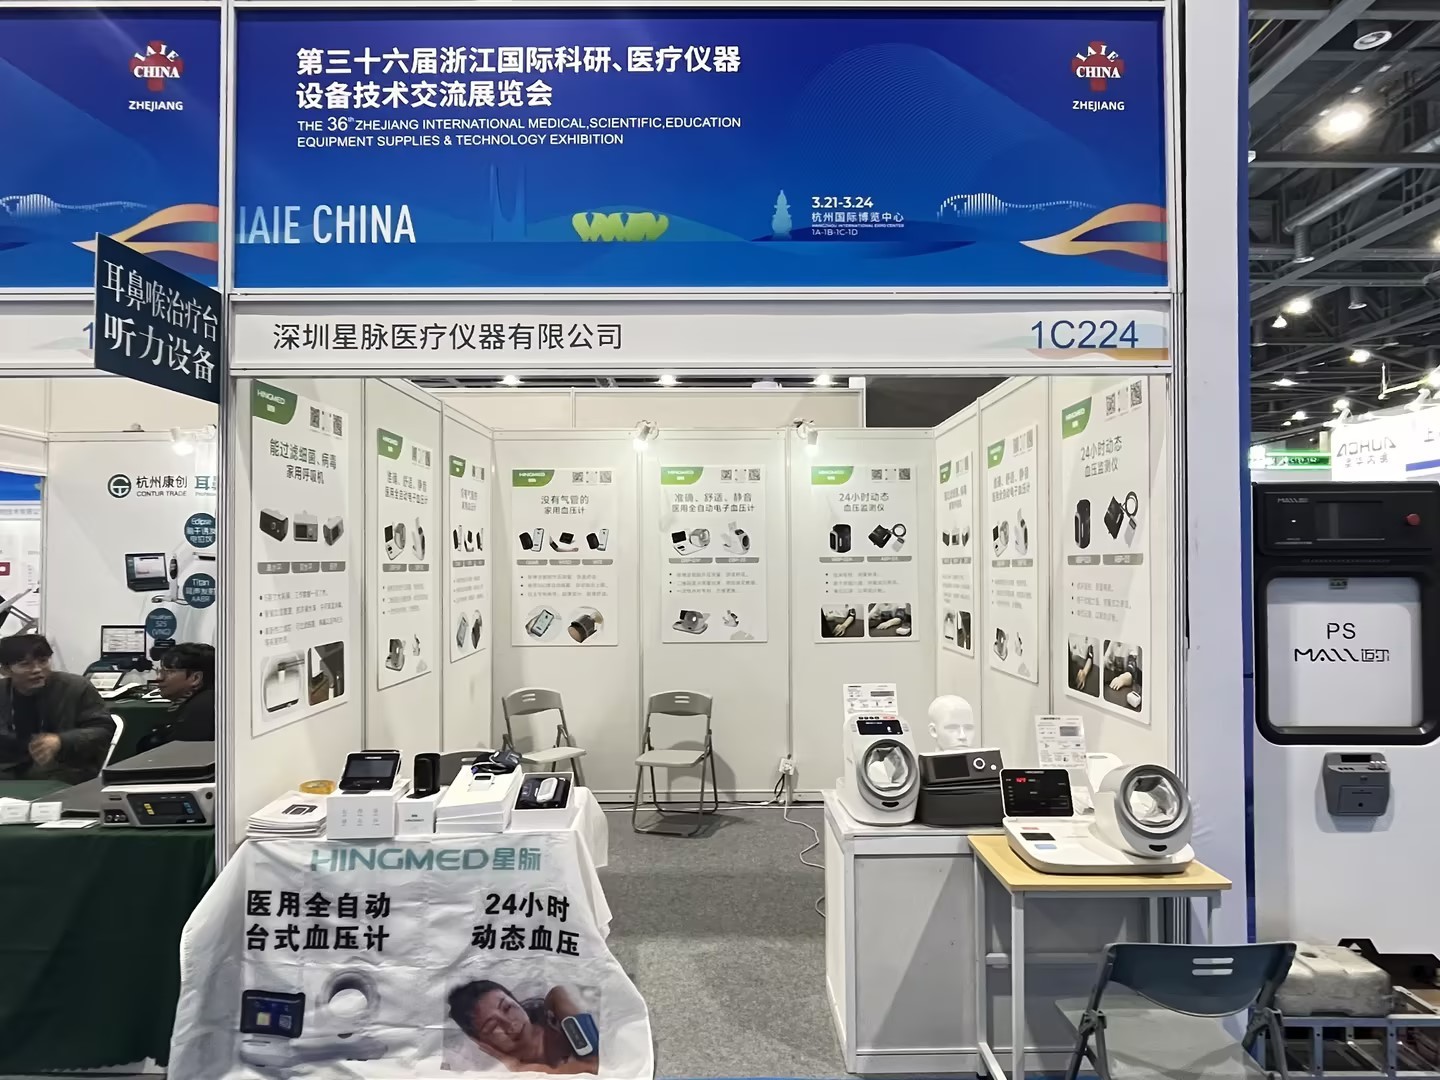 星脉医疗正在浙江国际科研、医疗仪器设备技术交流展览会